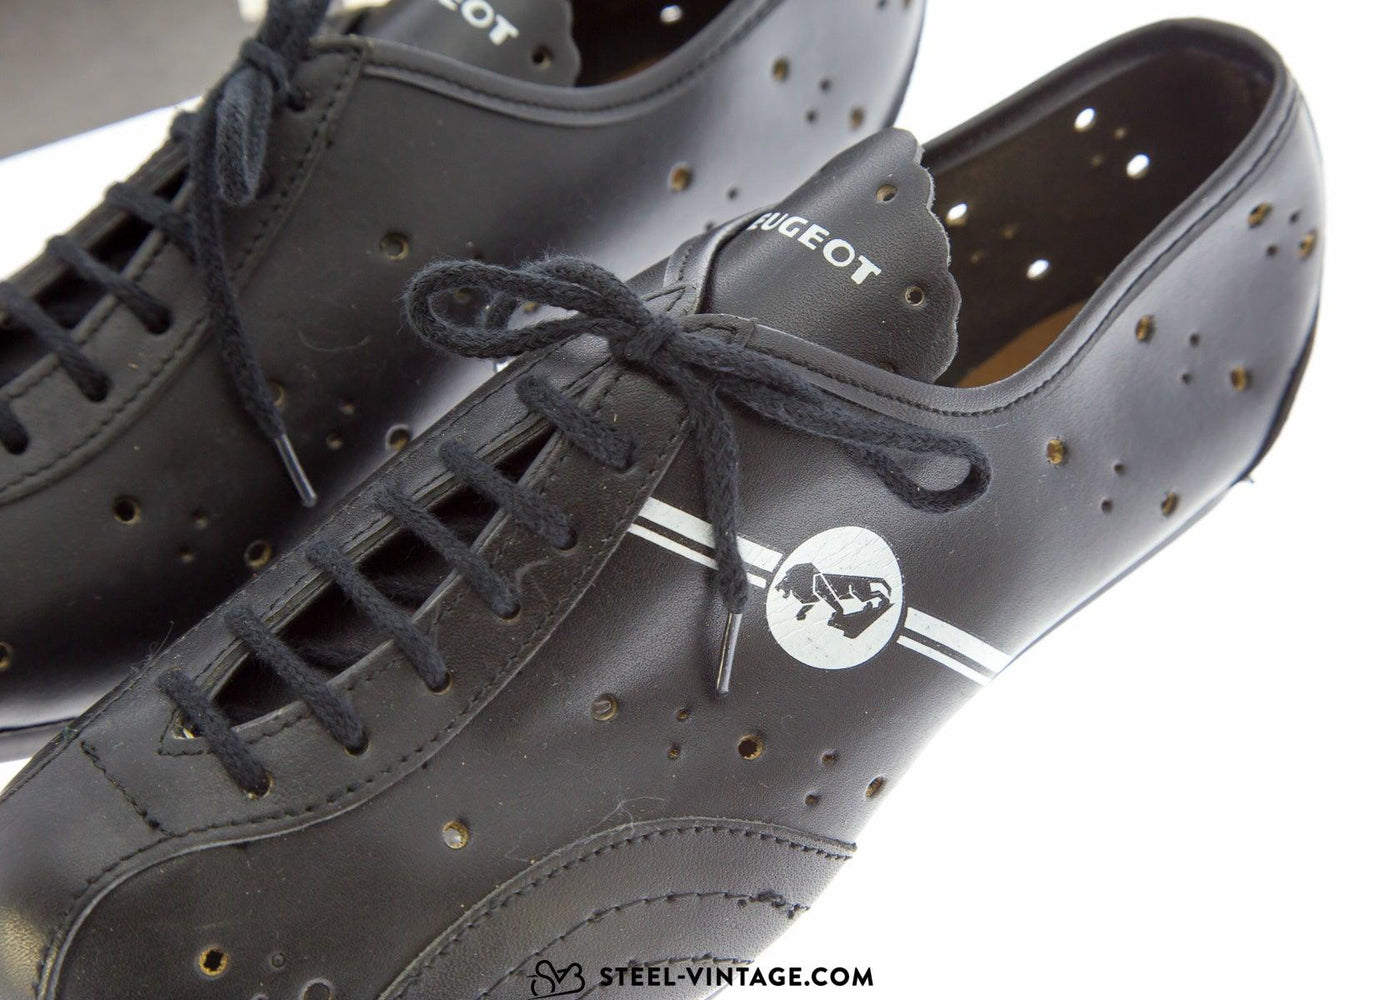 Peugeot Critérium Classic Cycling Shoes NOS Size 40 - Steel Vintage Bikes